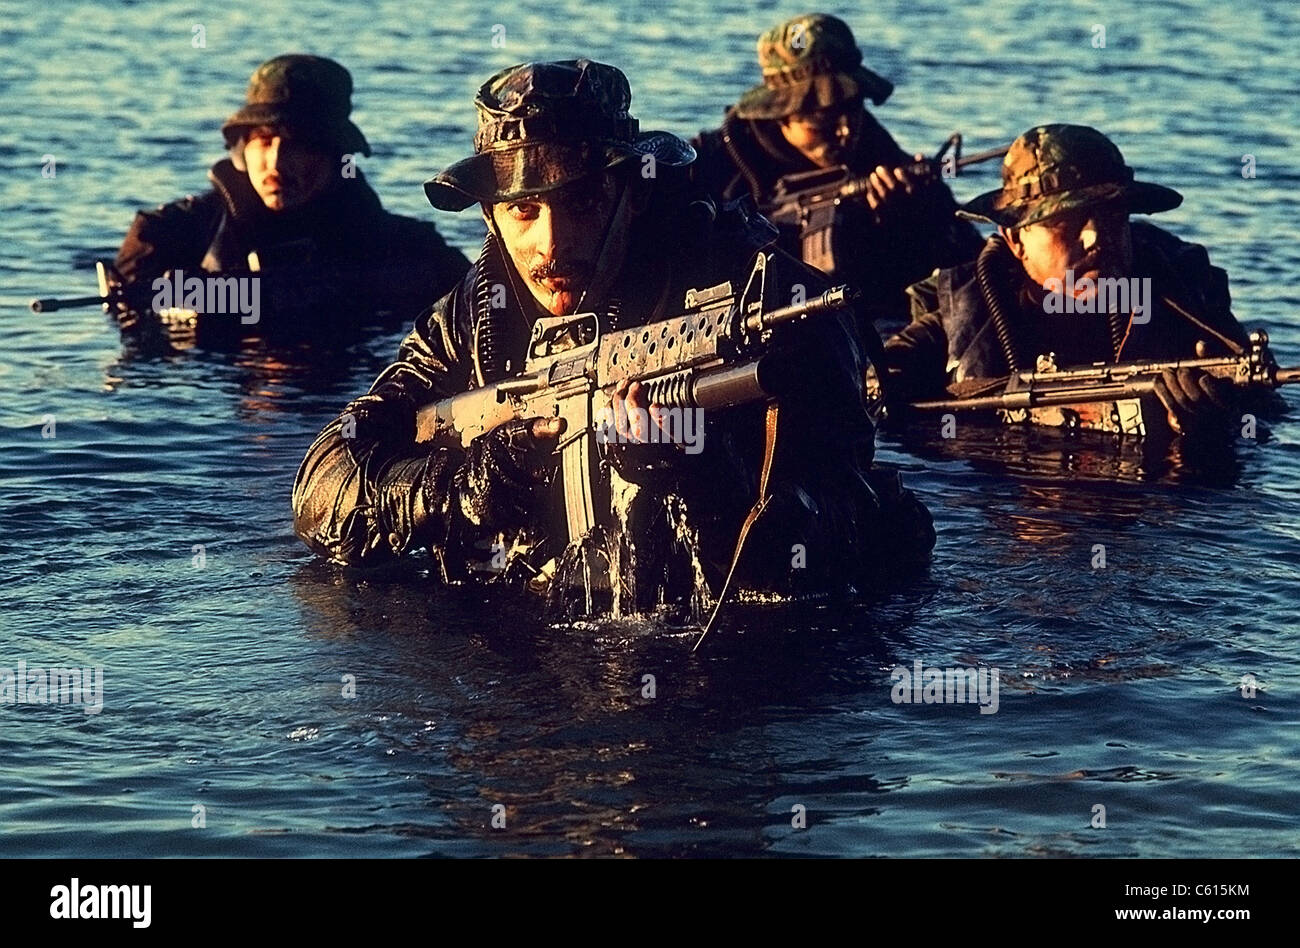 US Navy SEAL Team ergibt sich aus dem Wasser während des Trainings der Kriegsführung. Vordergrund Dichtung ist mit einer m-16 Gewehr mit einem Granatwerfer ausgestattet bewaffnet. 1. Dezember 1986. (BSLOC 2011 12 275) Stockfoto